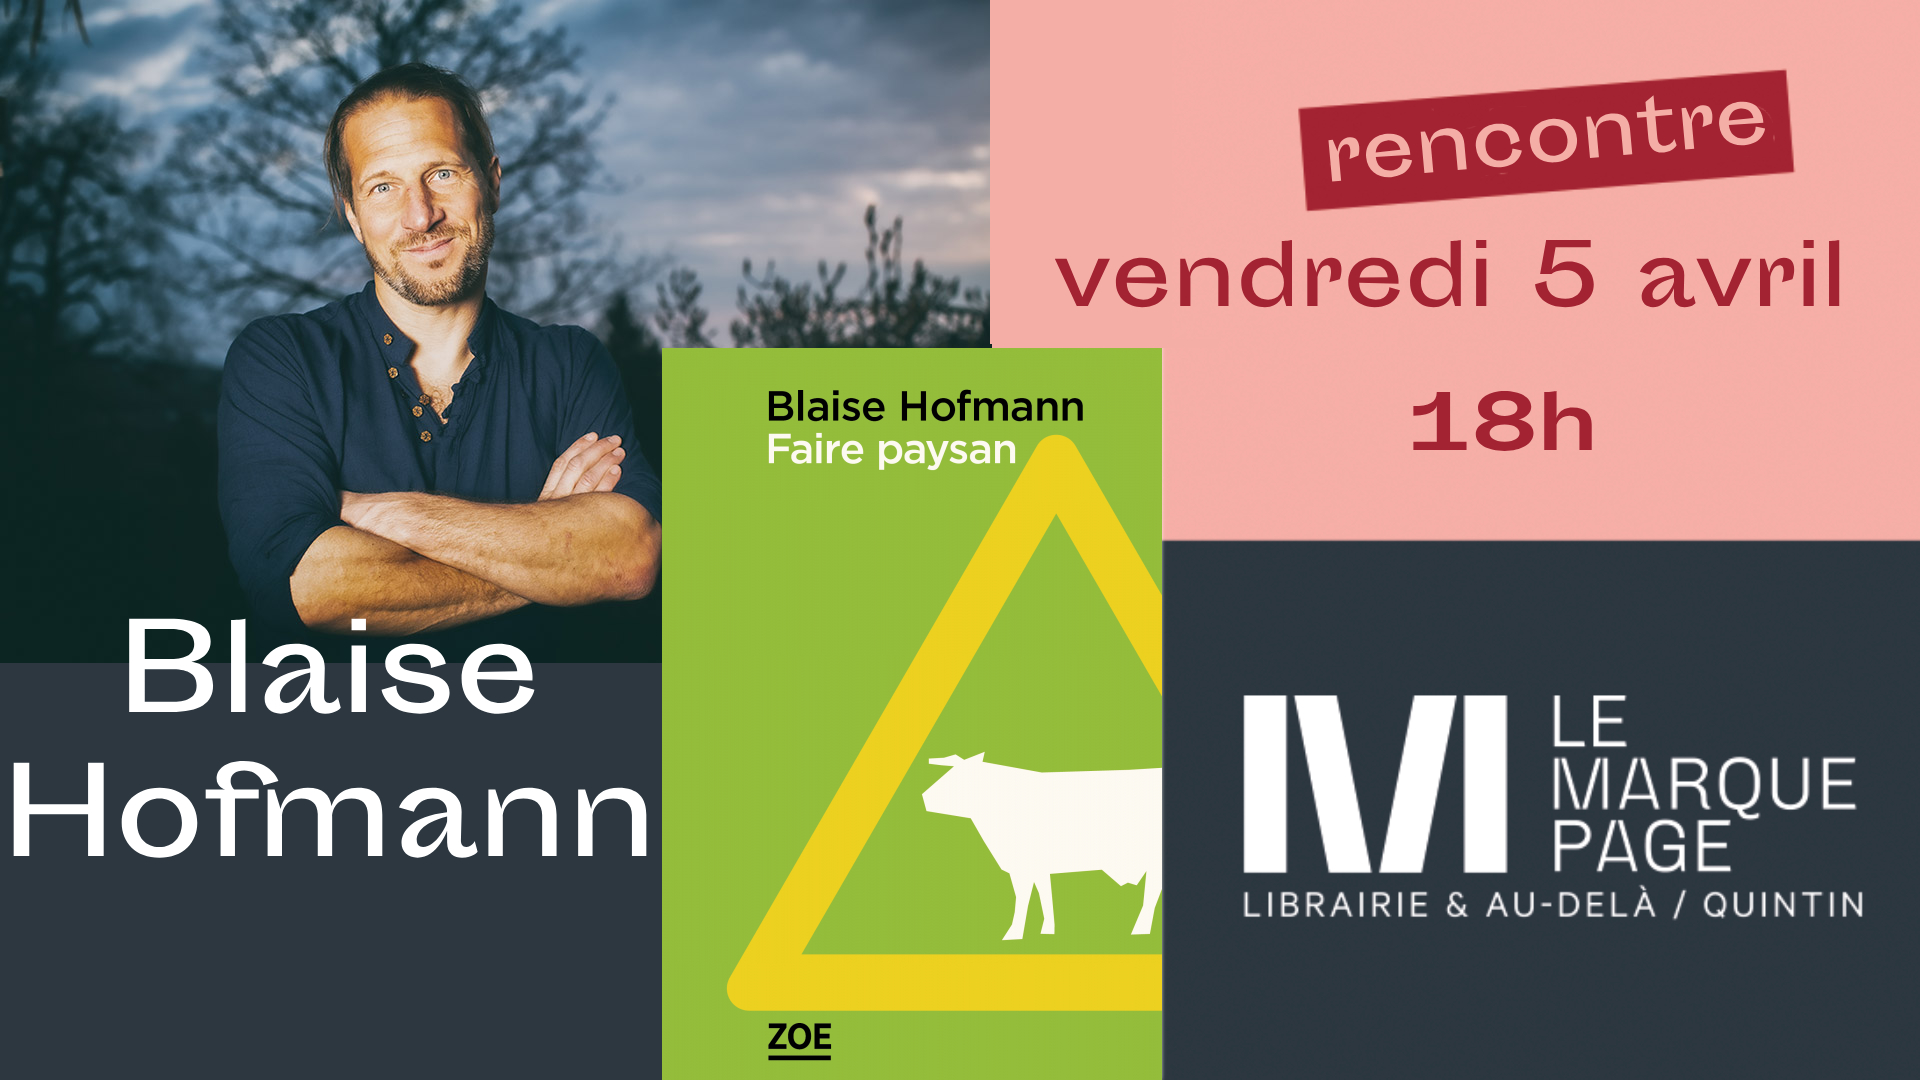 Rencontre & dédicace avec Blaise Hofmann